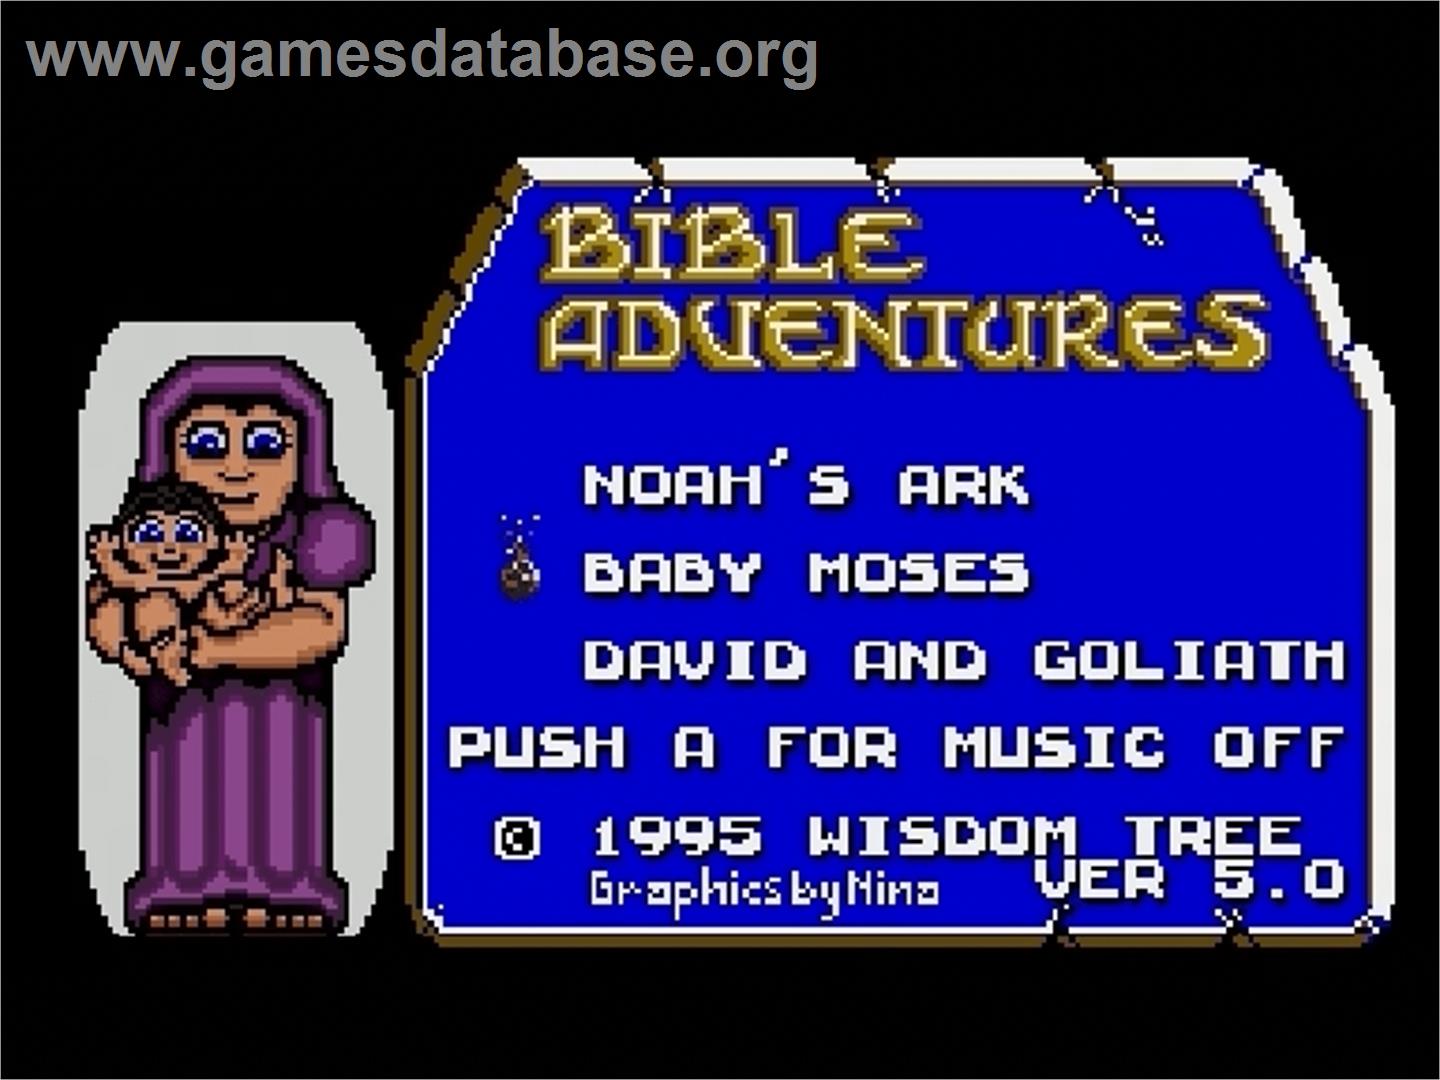 Bible Adventures - Sega Genesis - Artwork - Title Screen